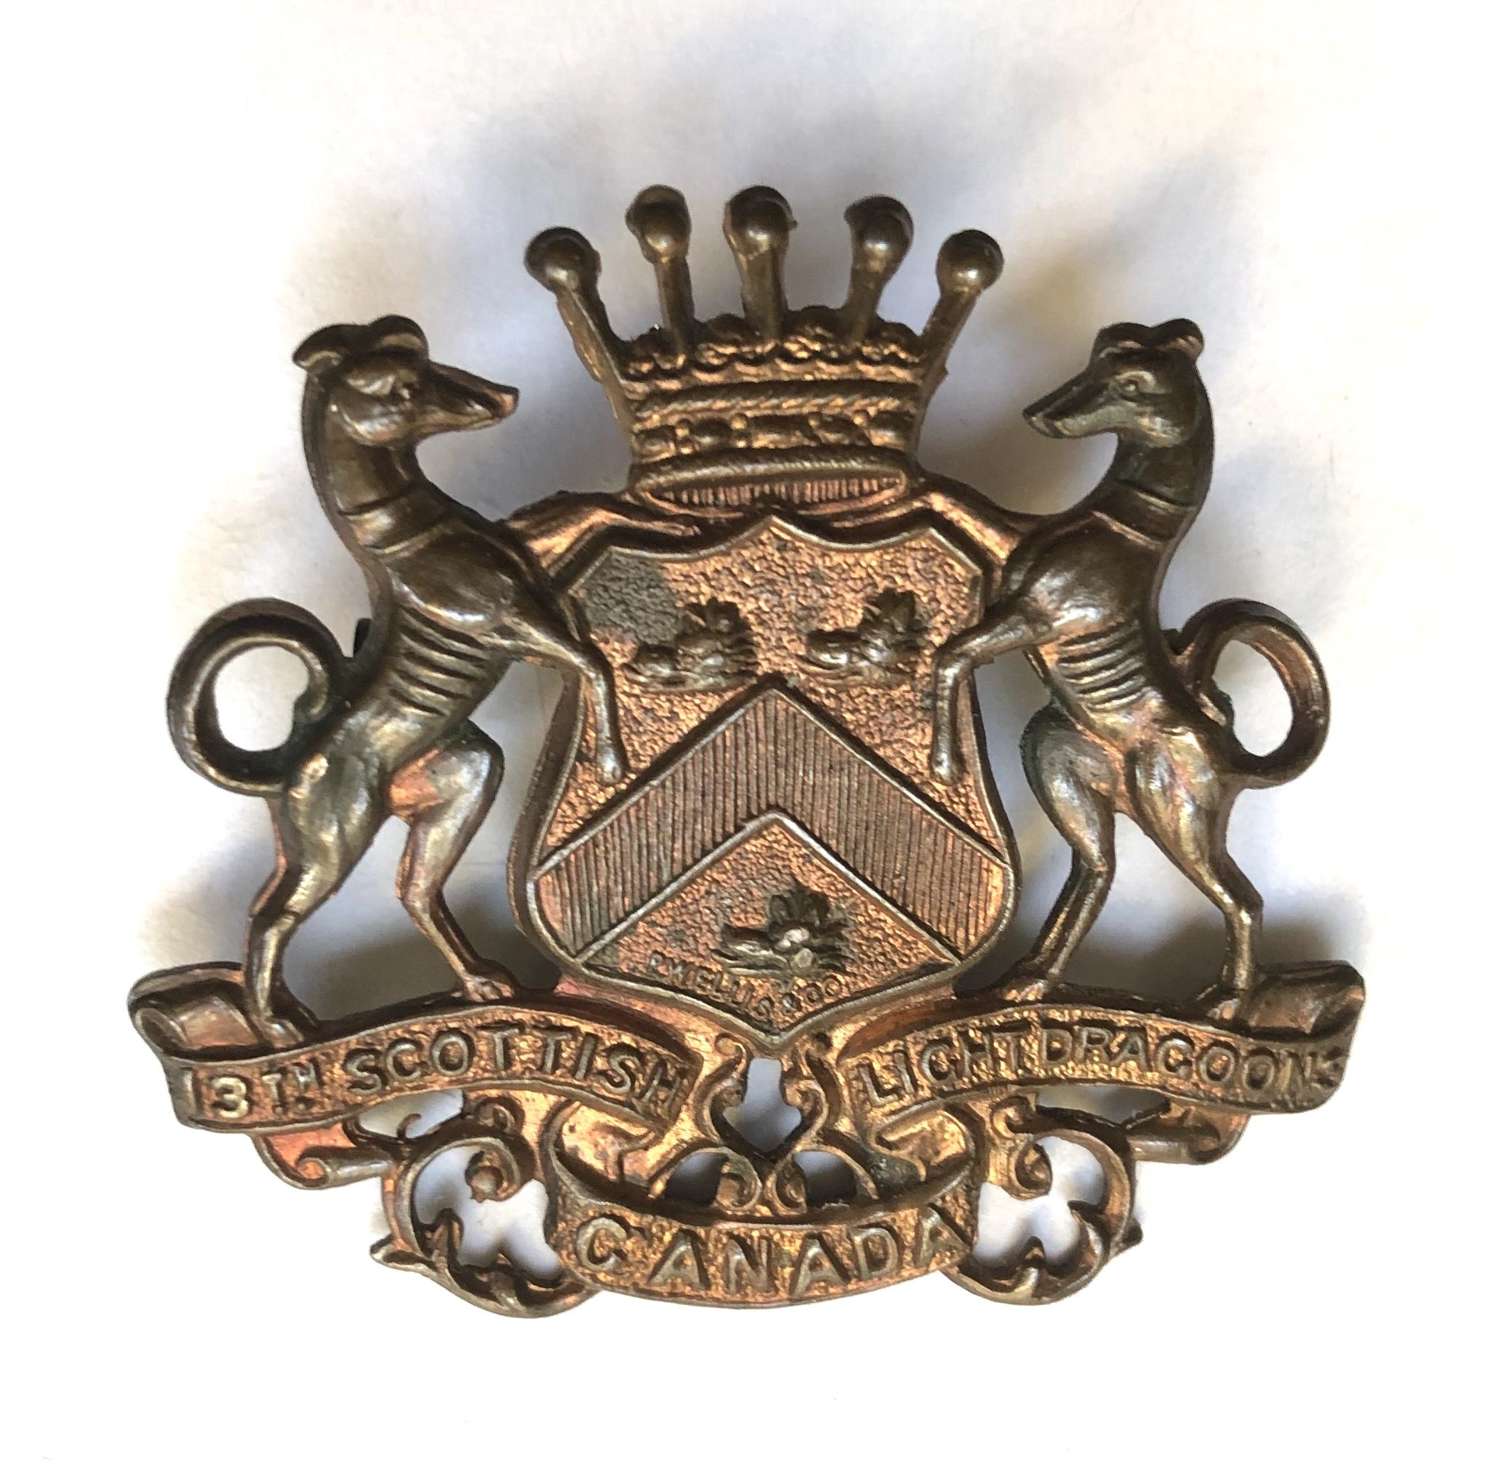 Canada. 13th Scottish Light Dragoons cap badge c1904-36